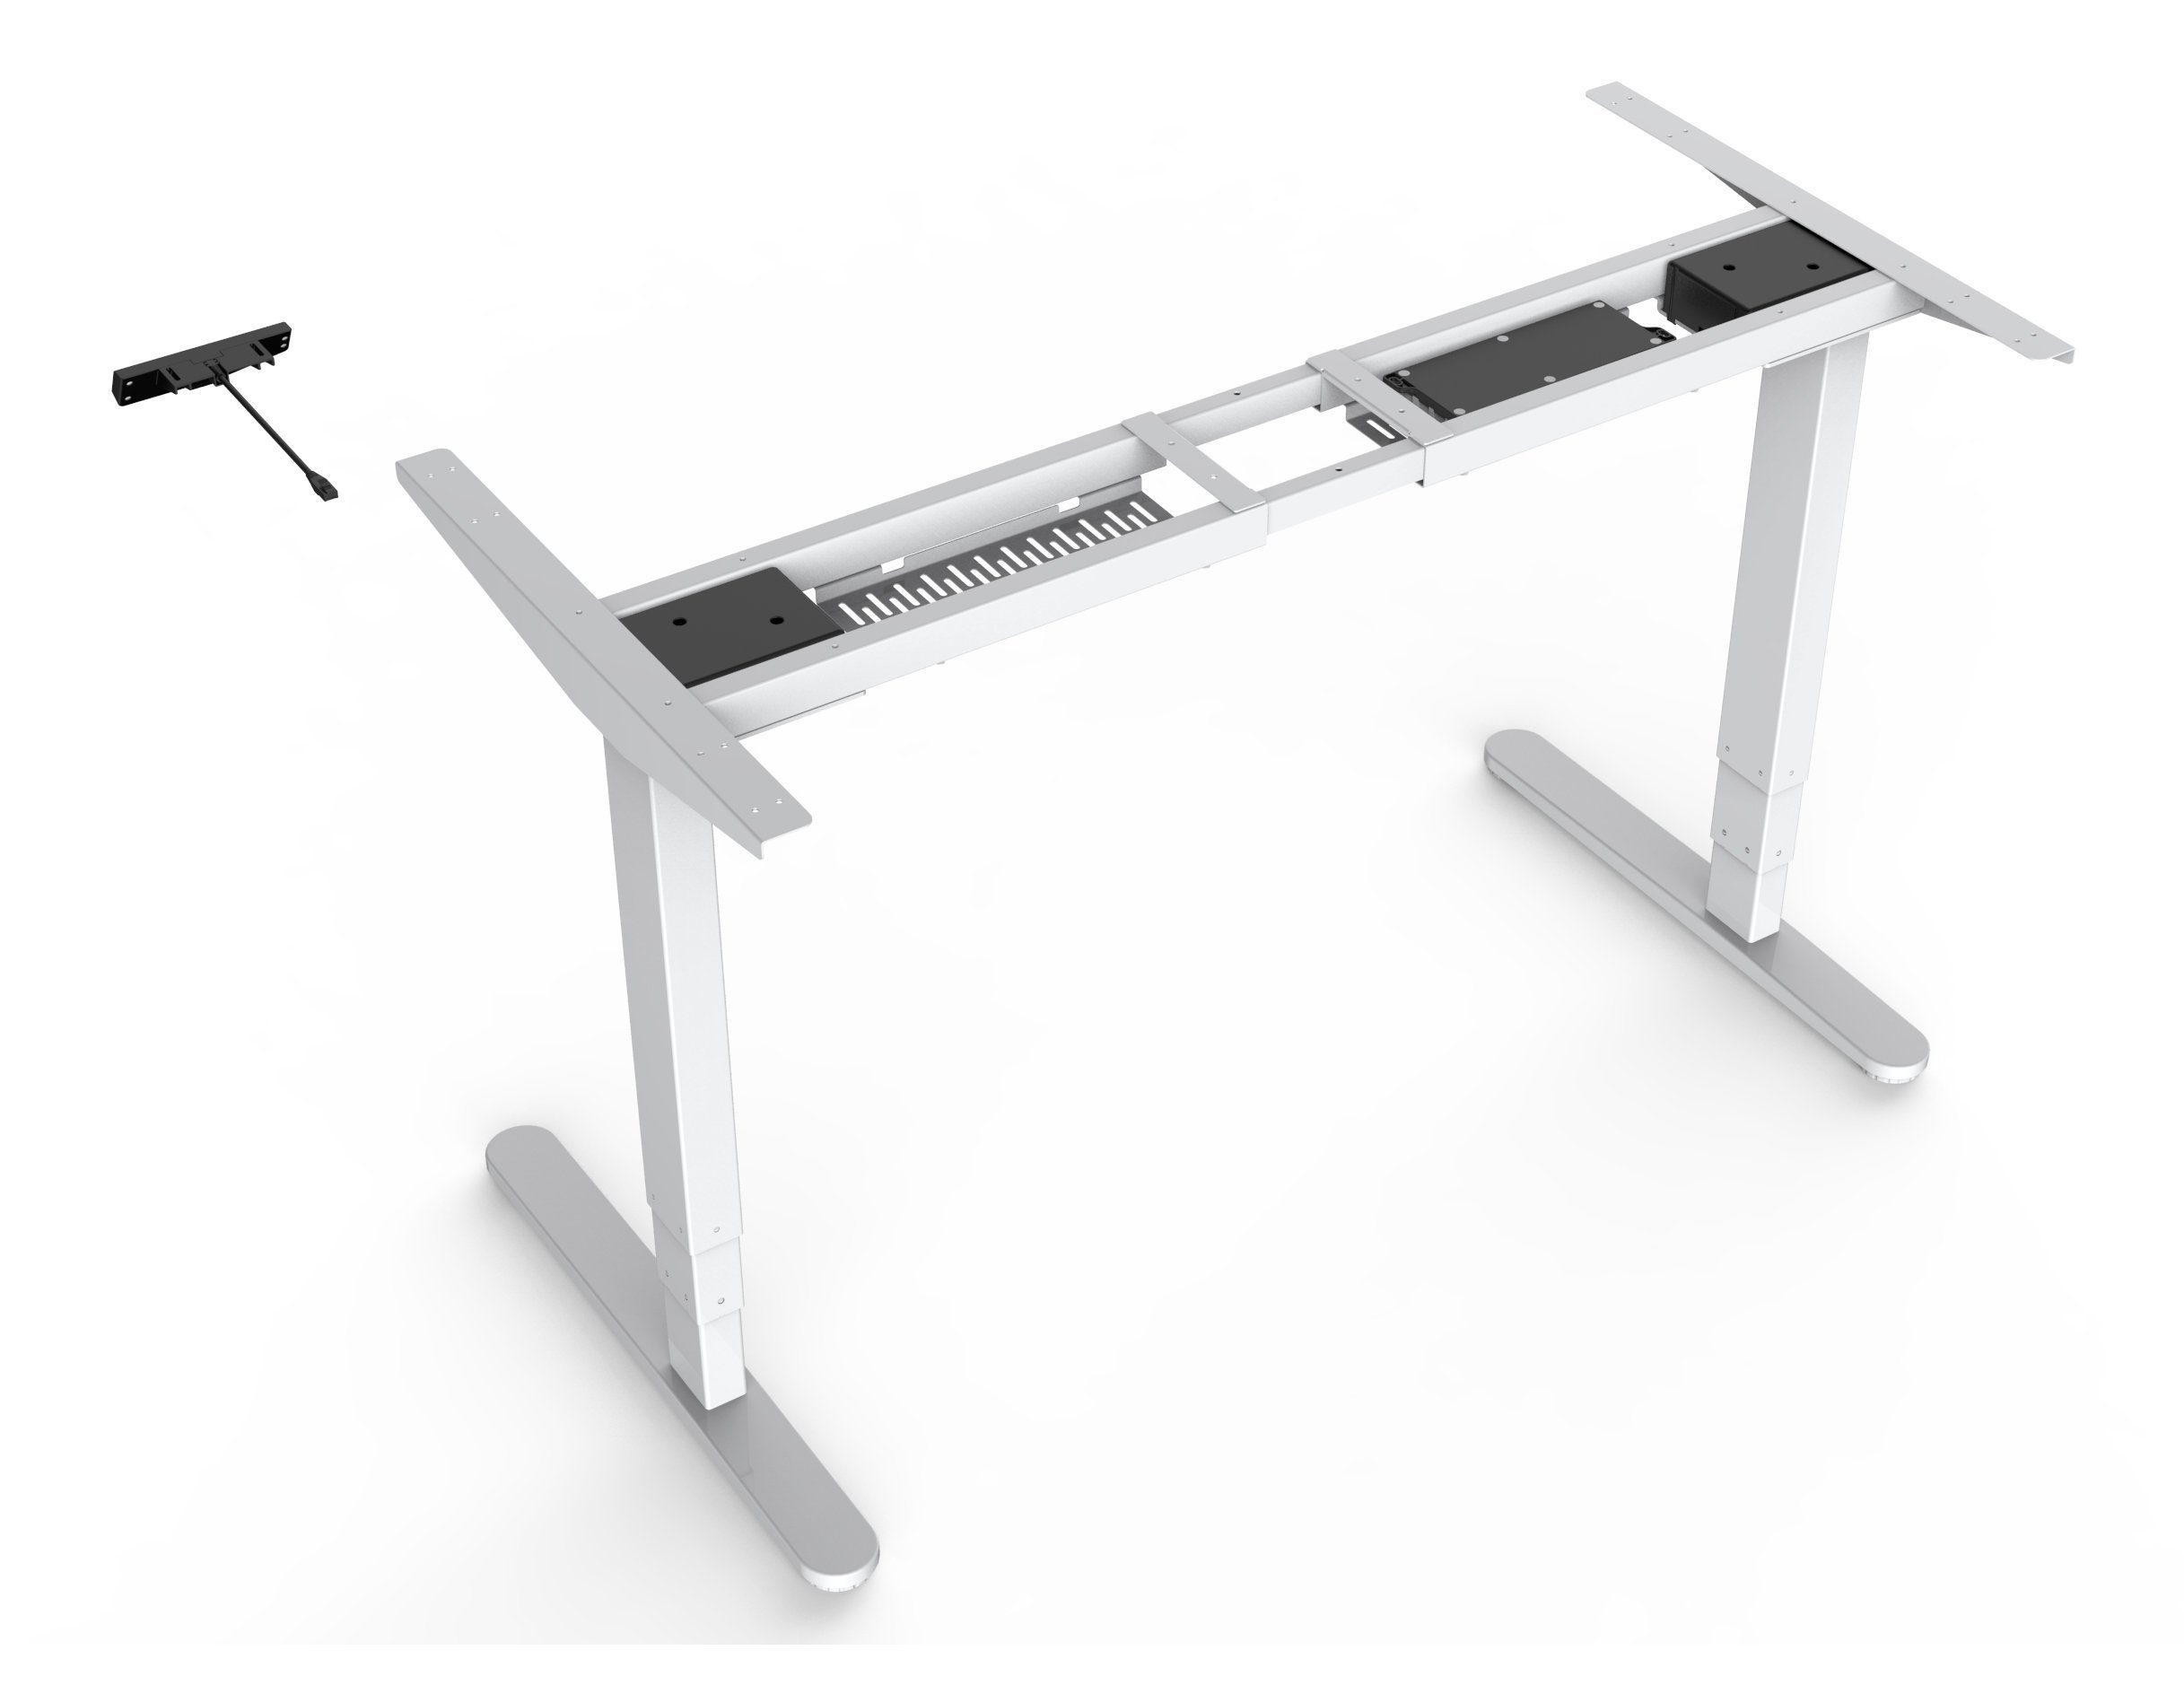 Home programmierbar elektrisch Schreibtischgestell Stufen Better 3 Tischgestell (1 Stück), FlexiDesk Dual Motor höhenverstellbares